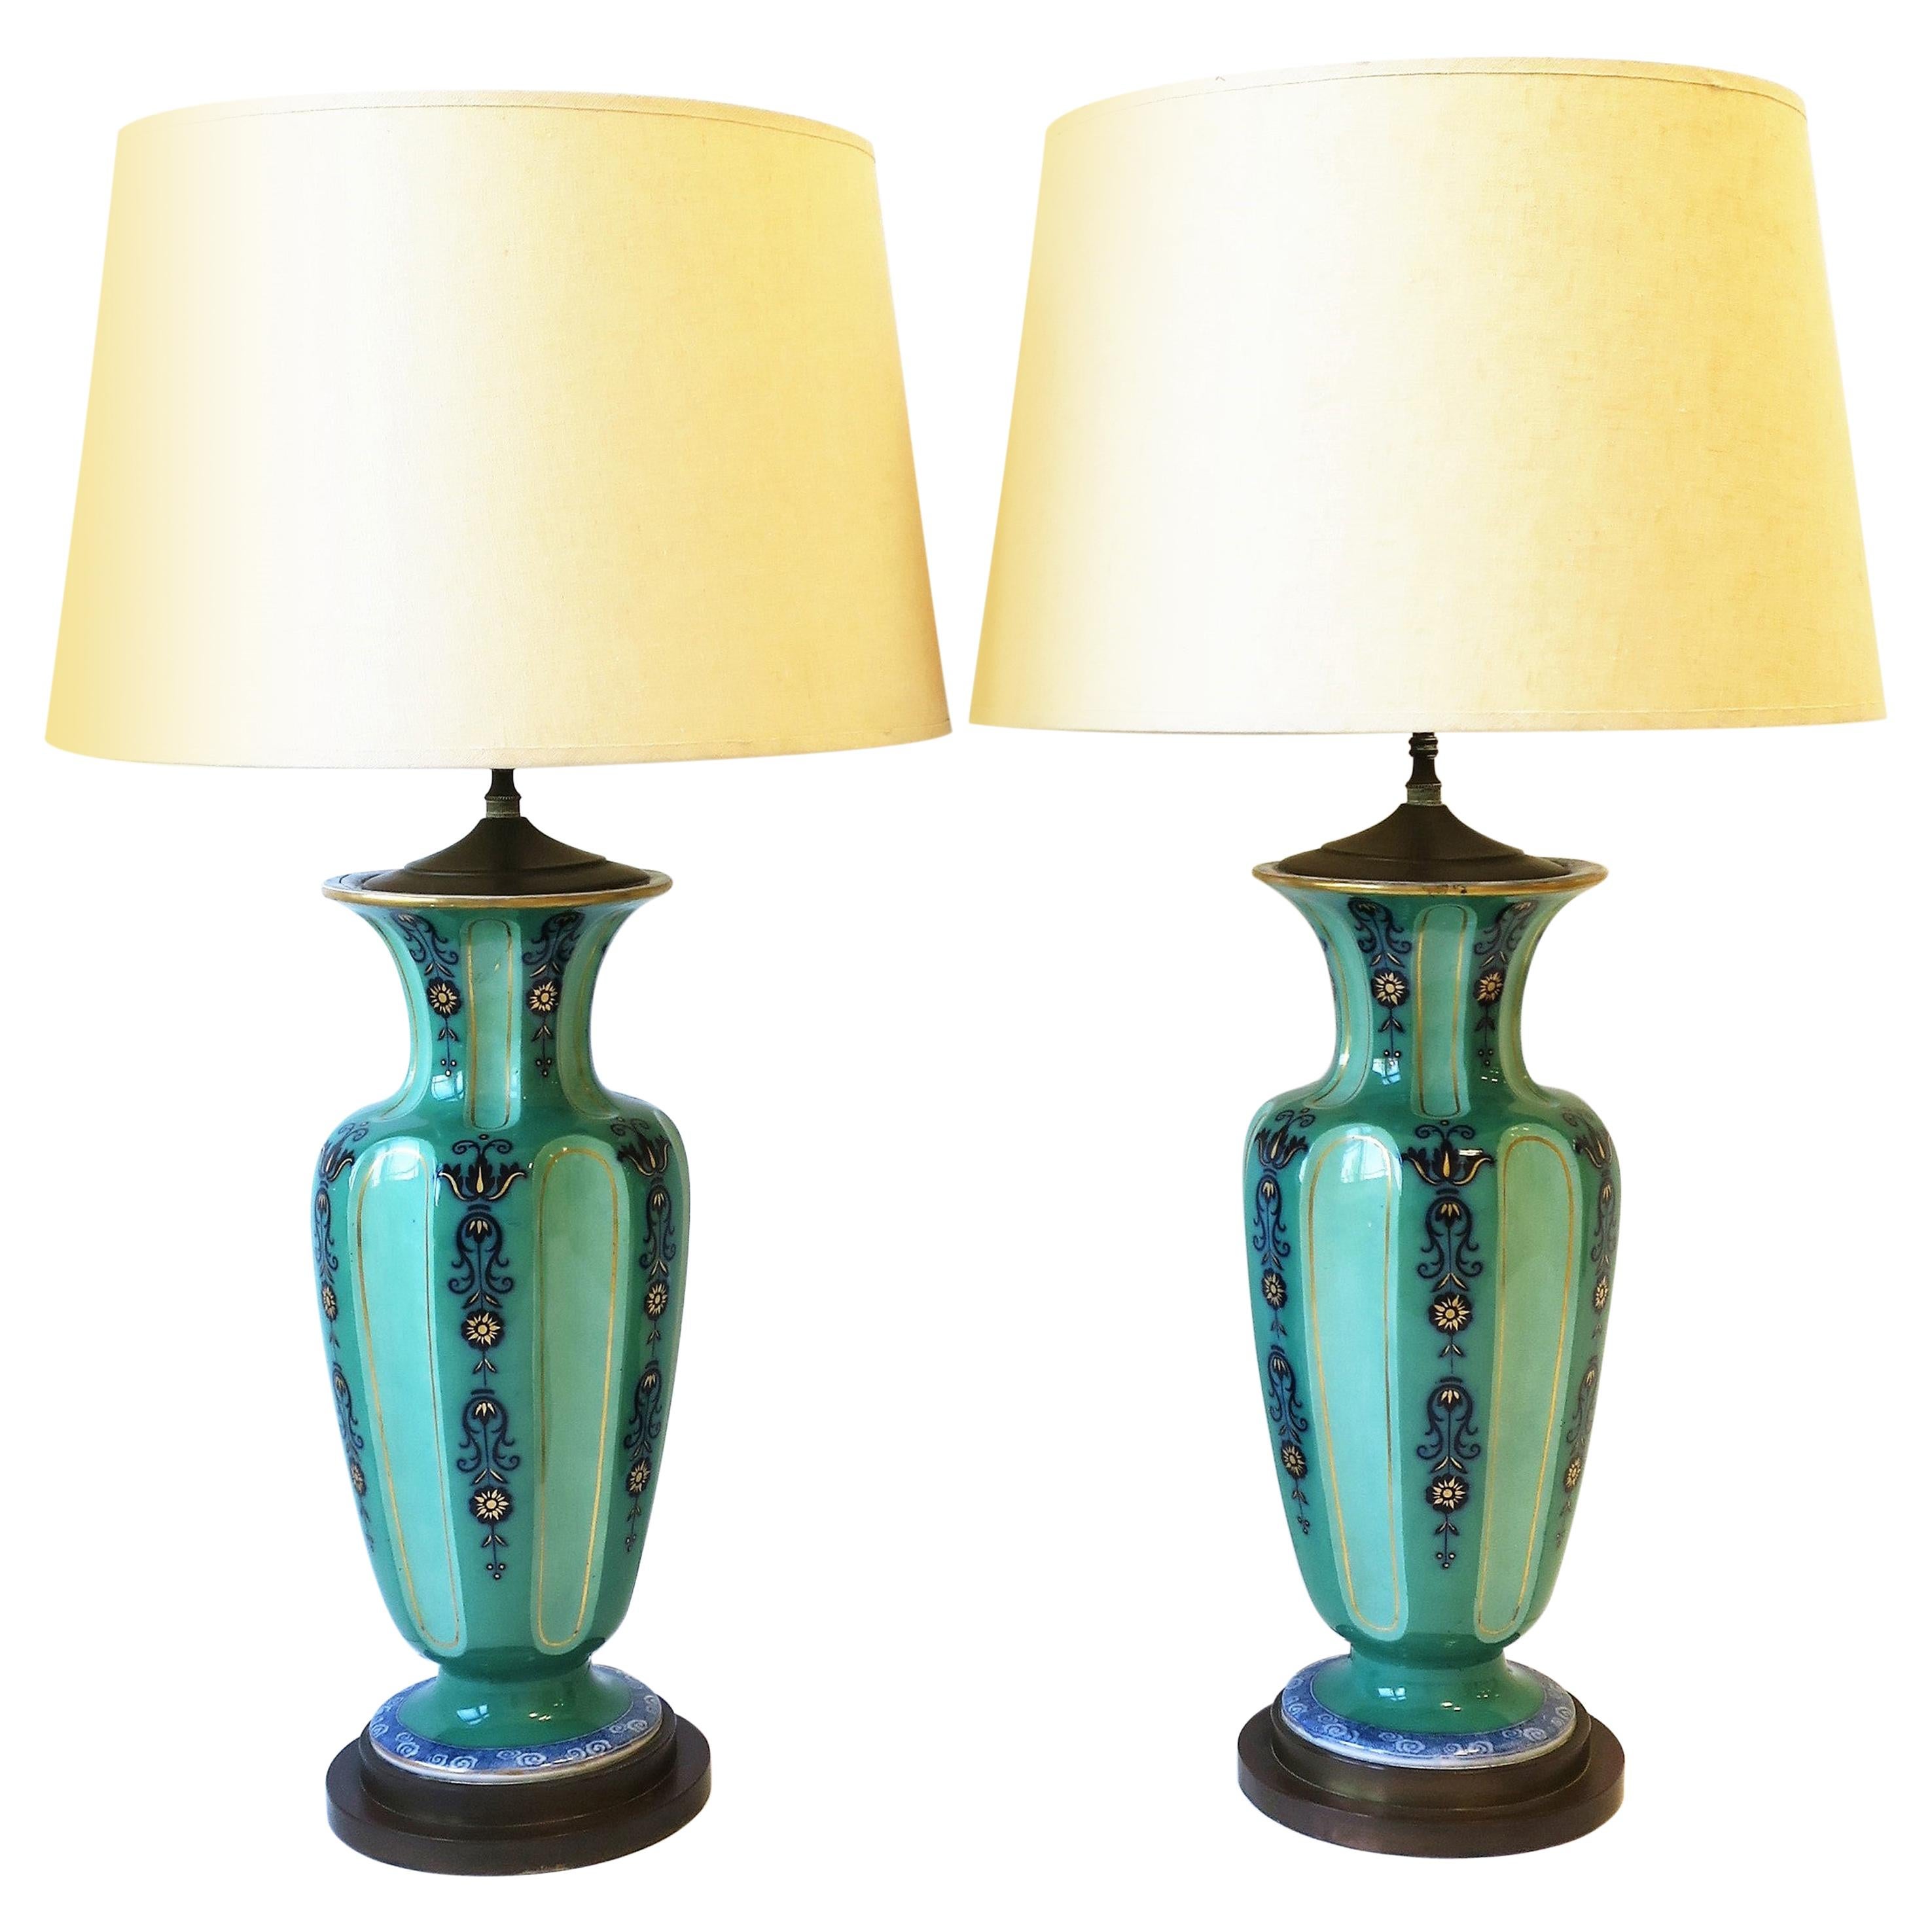 Holländische Blau-Weiß-Grün-Porzellan-Tischlampen im Ginger Jar Stil, ca. 1930er Jahre